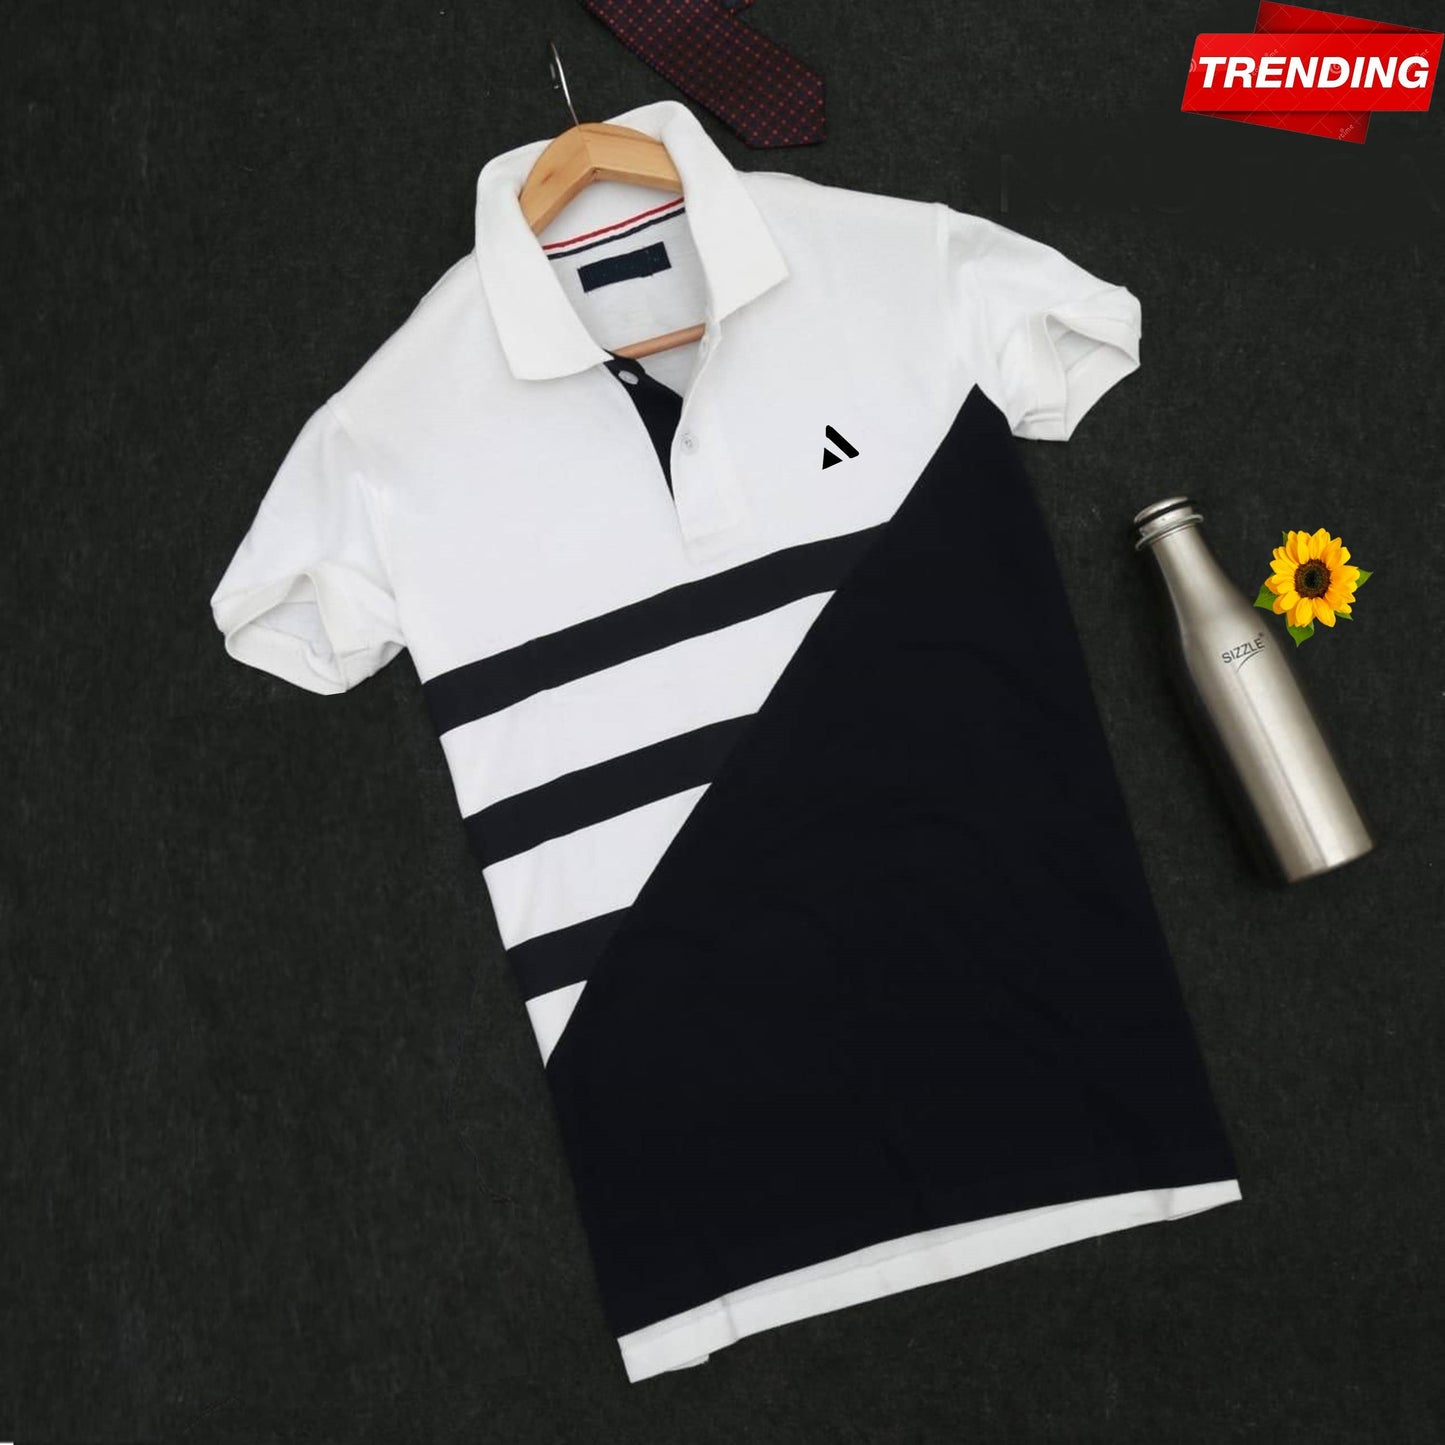 Stylish Men T Shirt White & Black Premium New